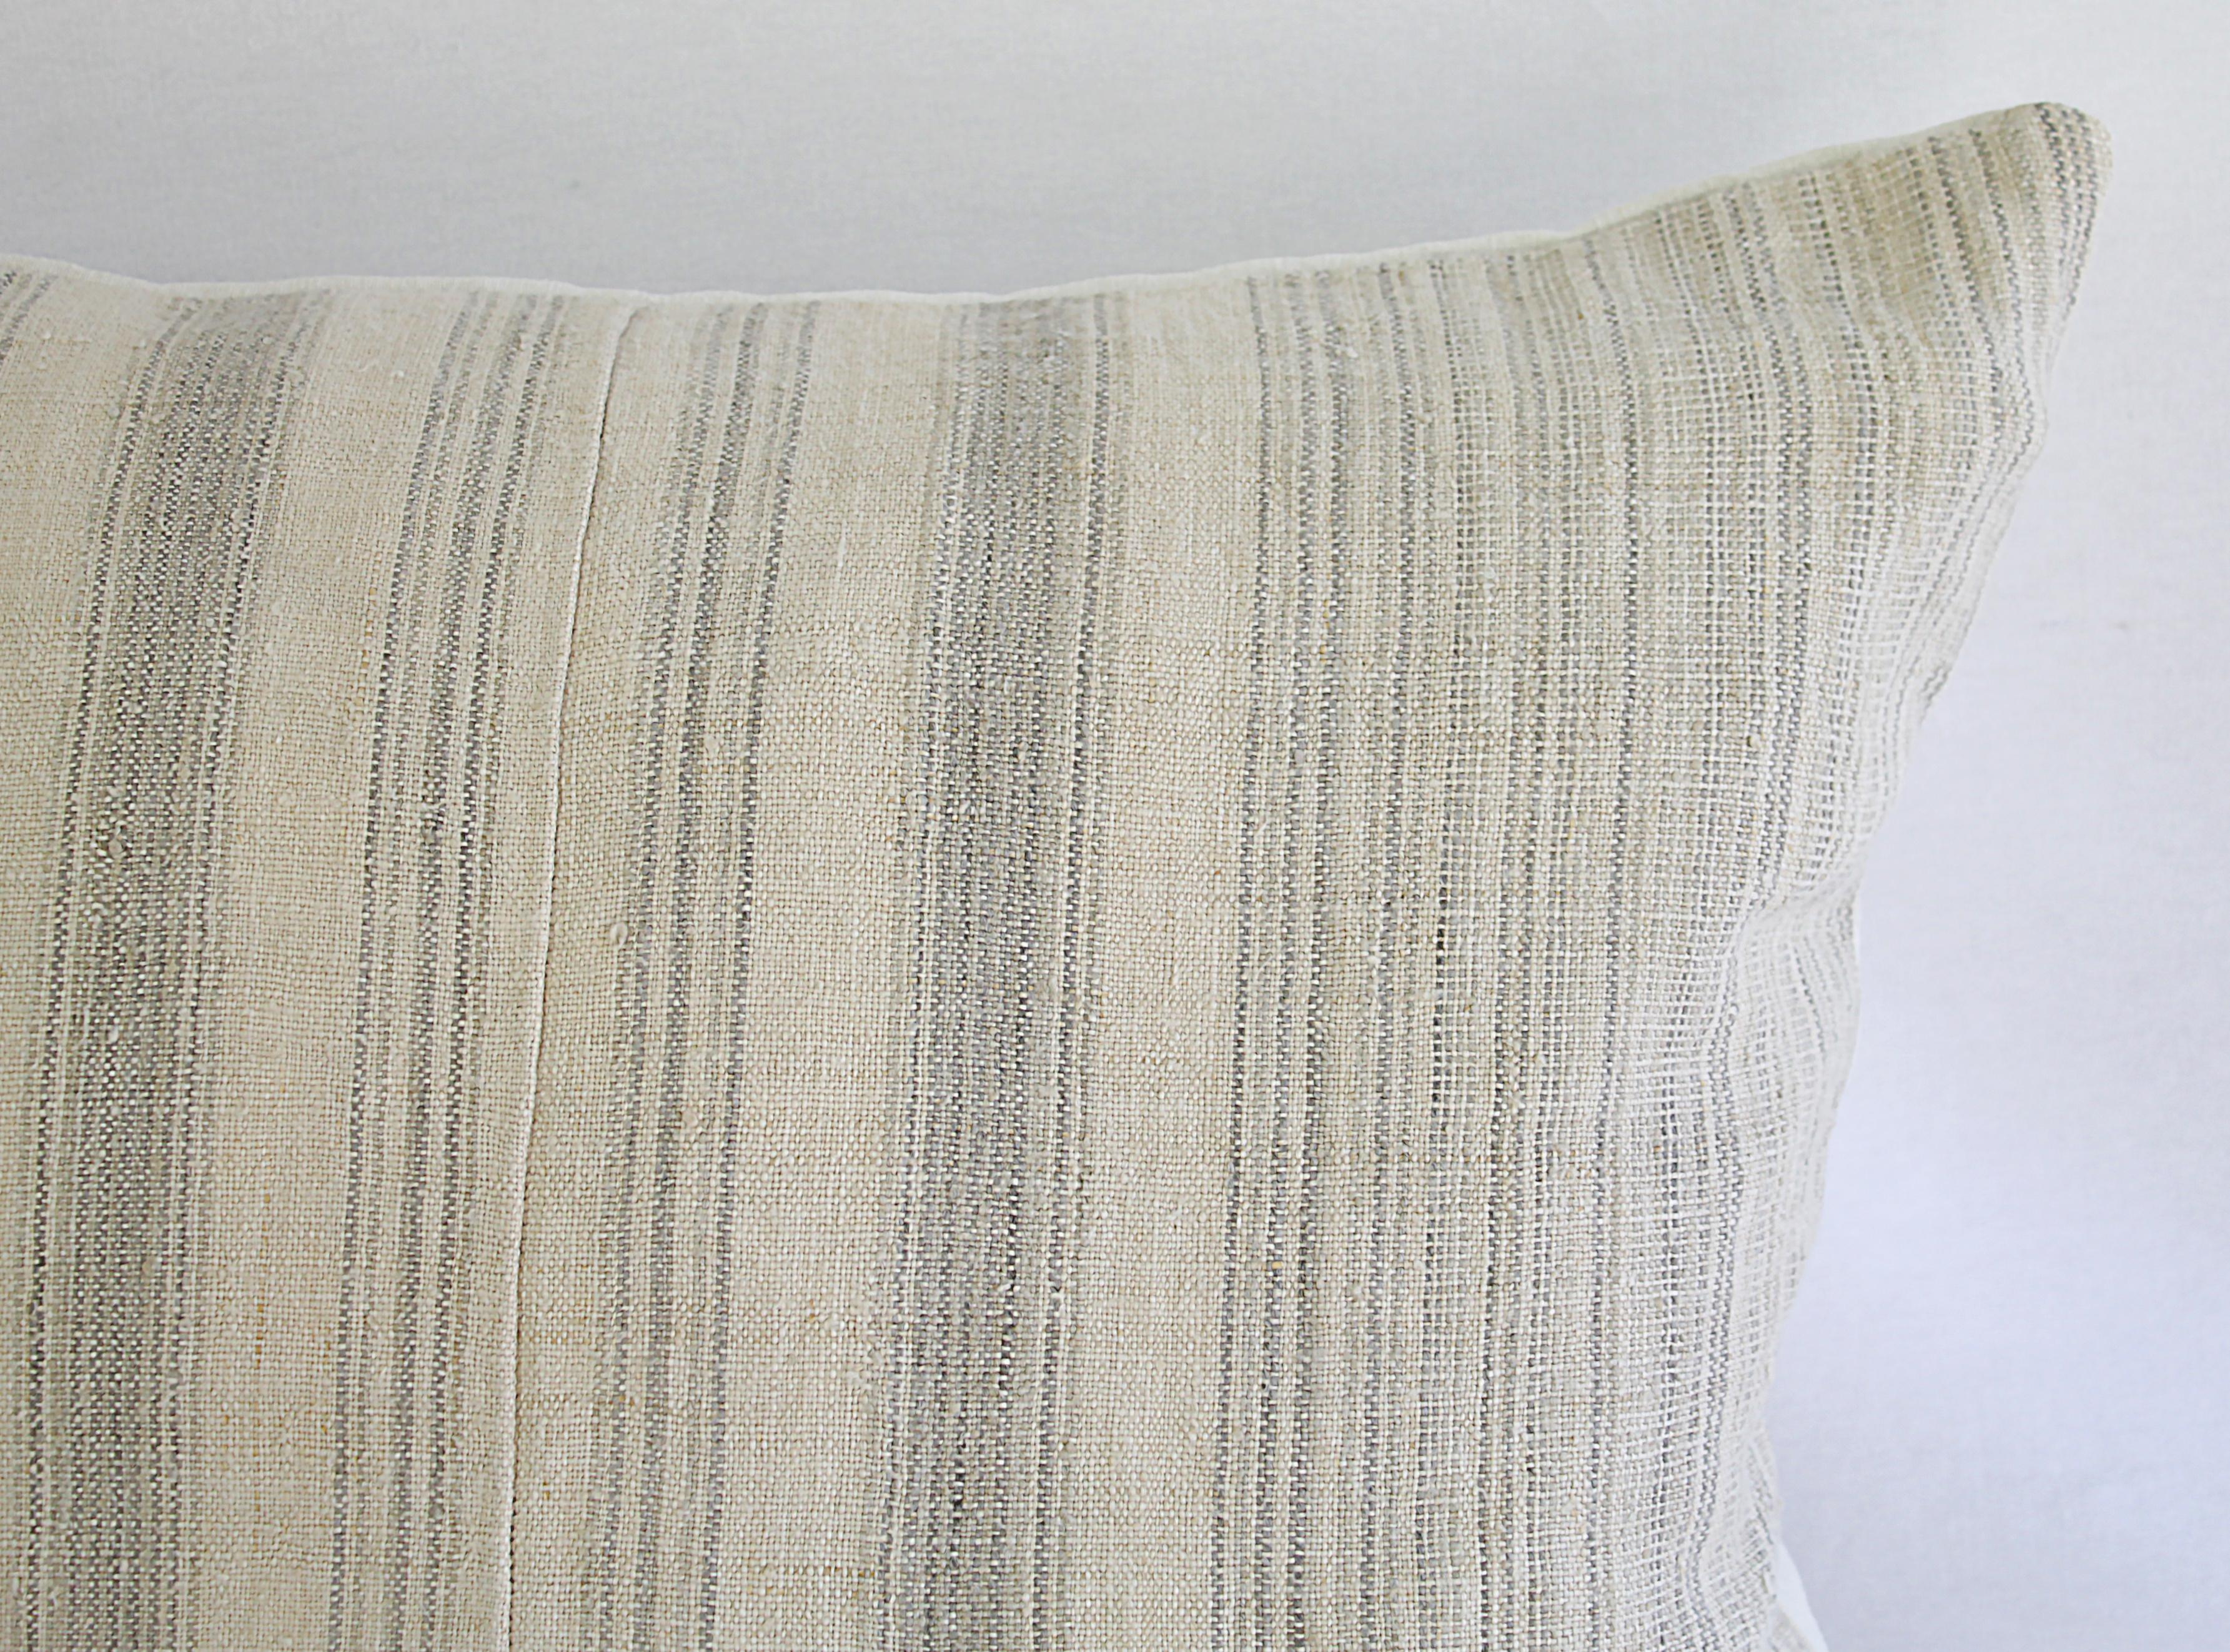 European Antique Homespun Linen and Striped Grain Sack Pillow